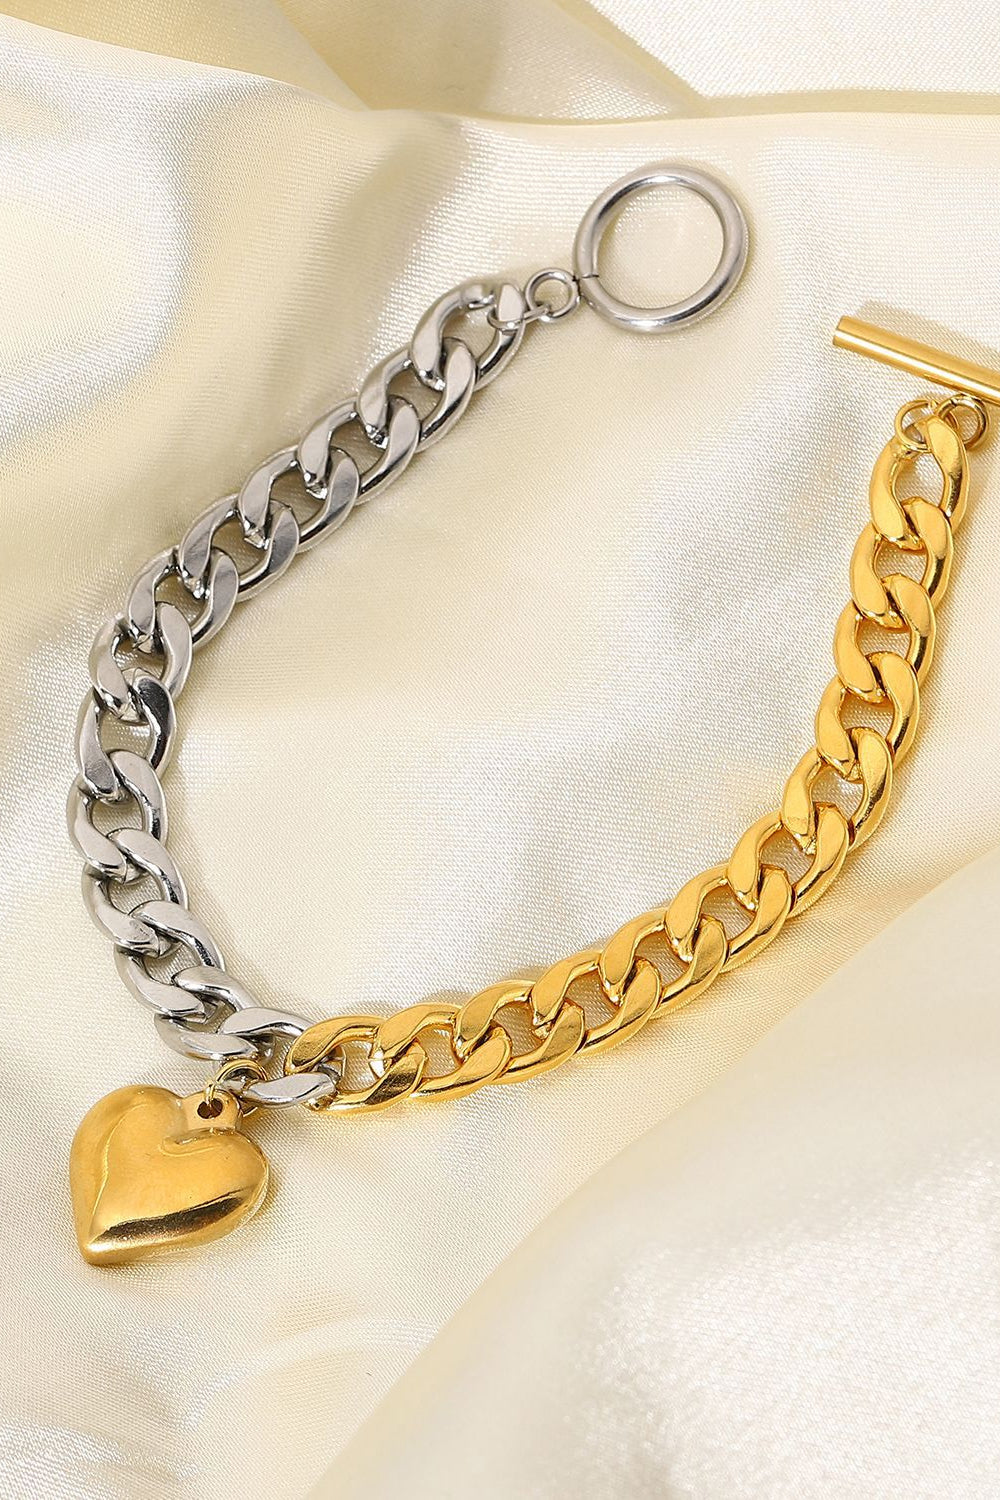 Chain Heart Charm Bracelet - Multicolored / One Size - Women’s Jewelry - Bracelets - 6 - 2024